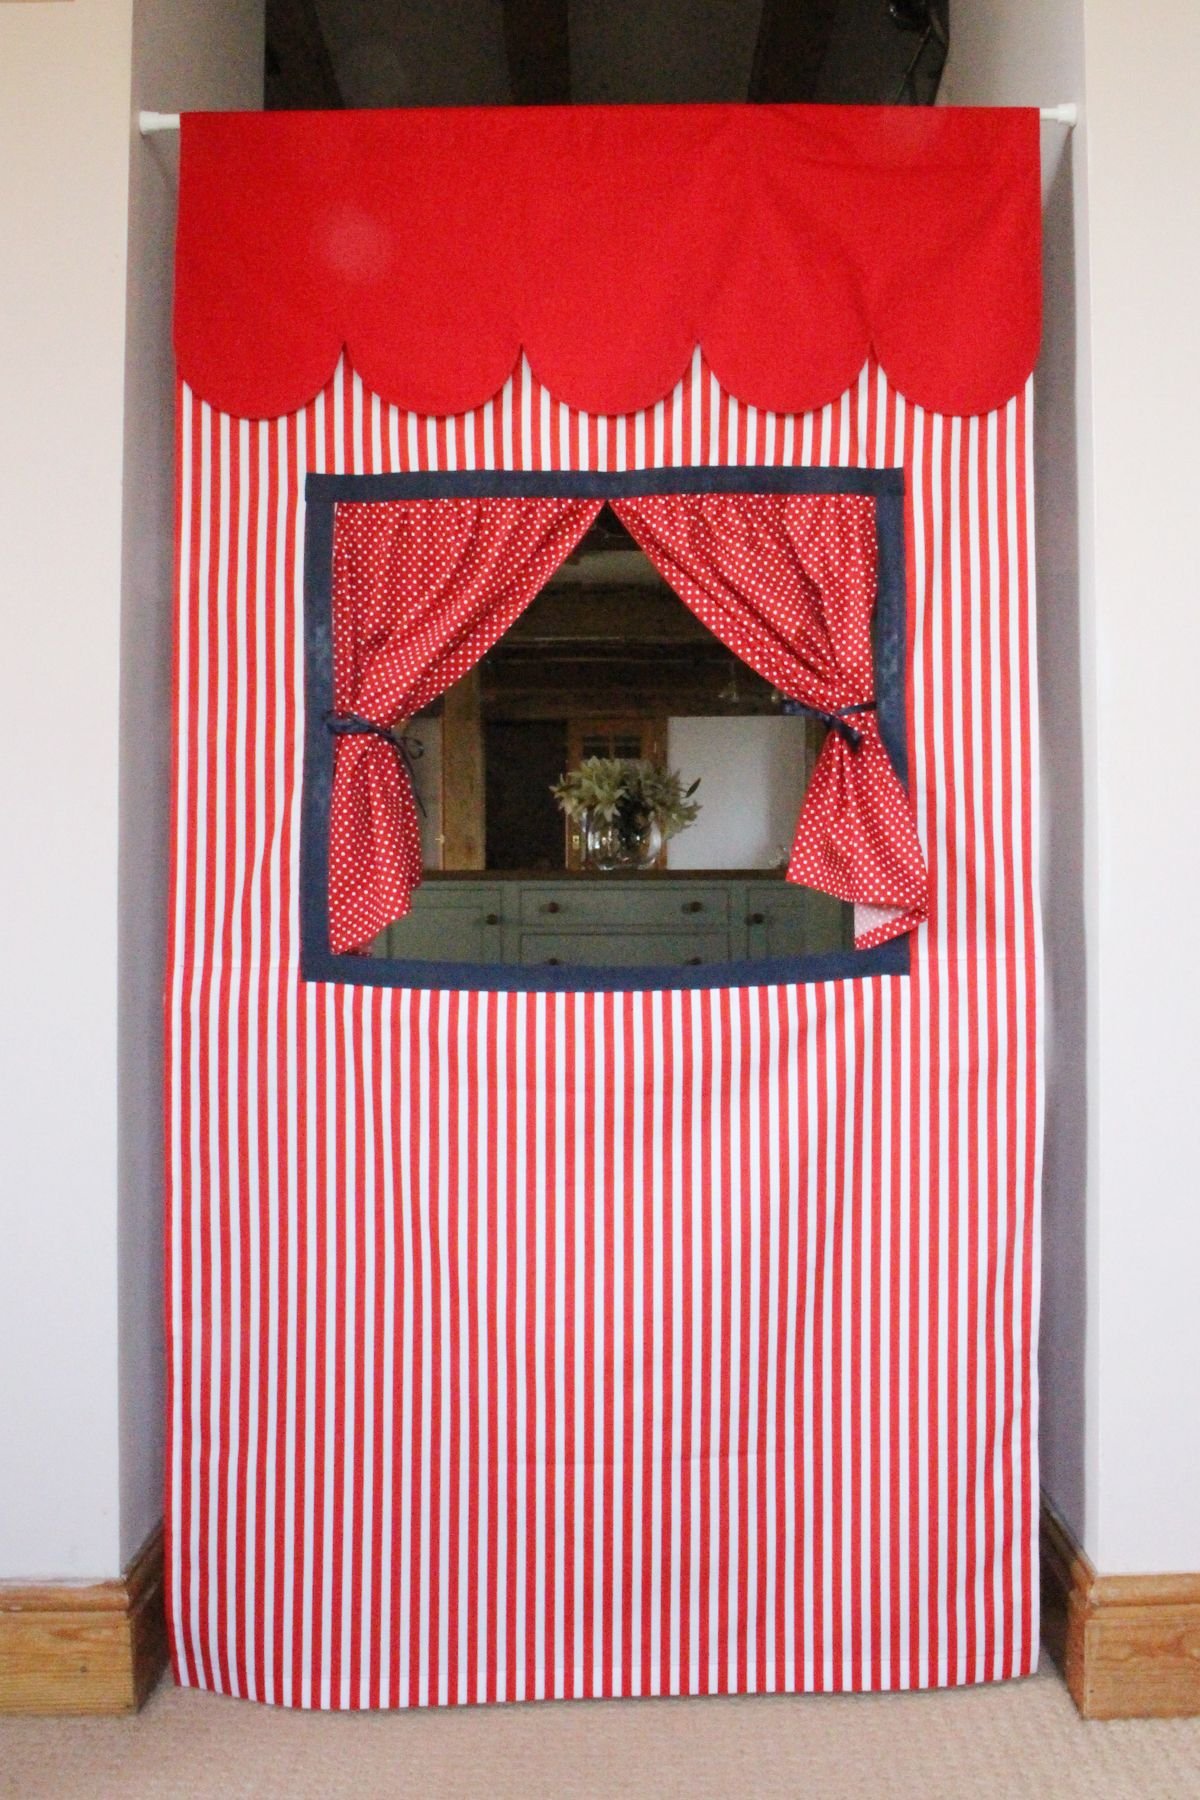 ширмы для кукольного театра в детском саду